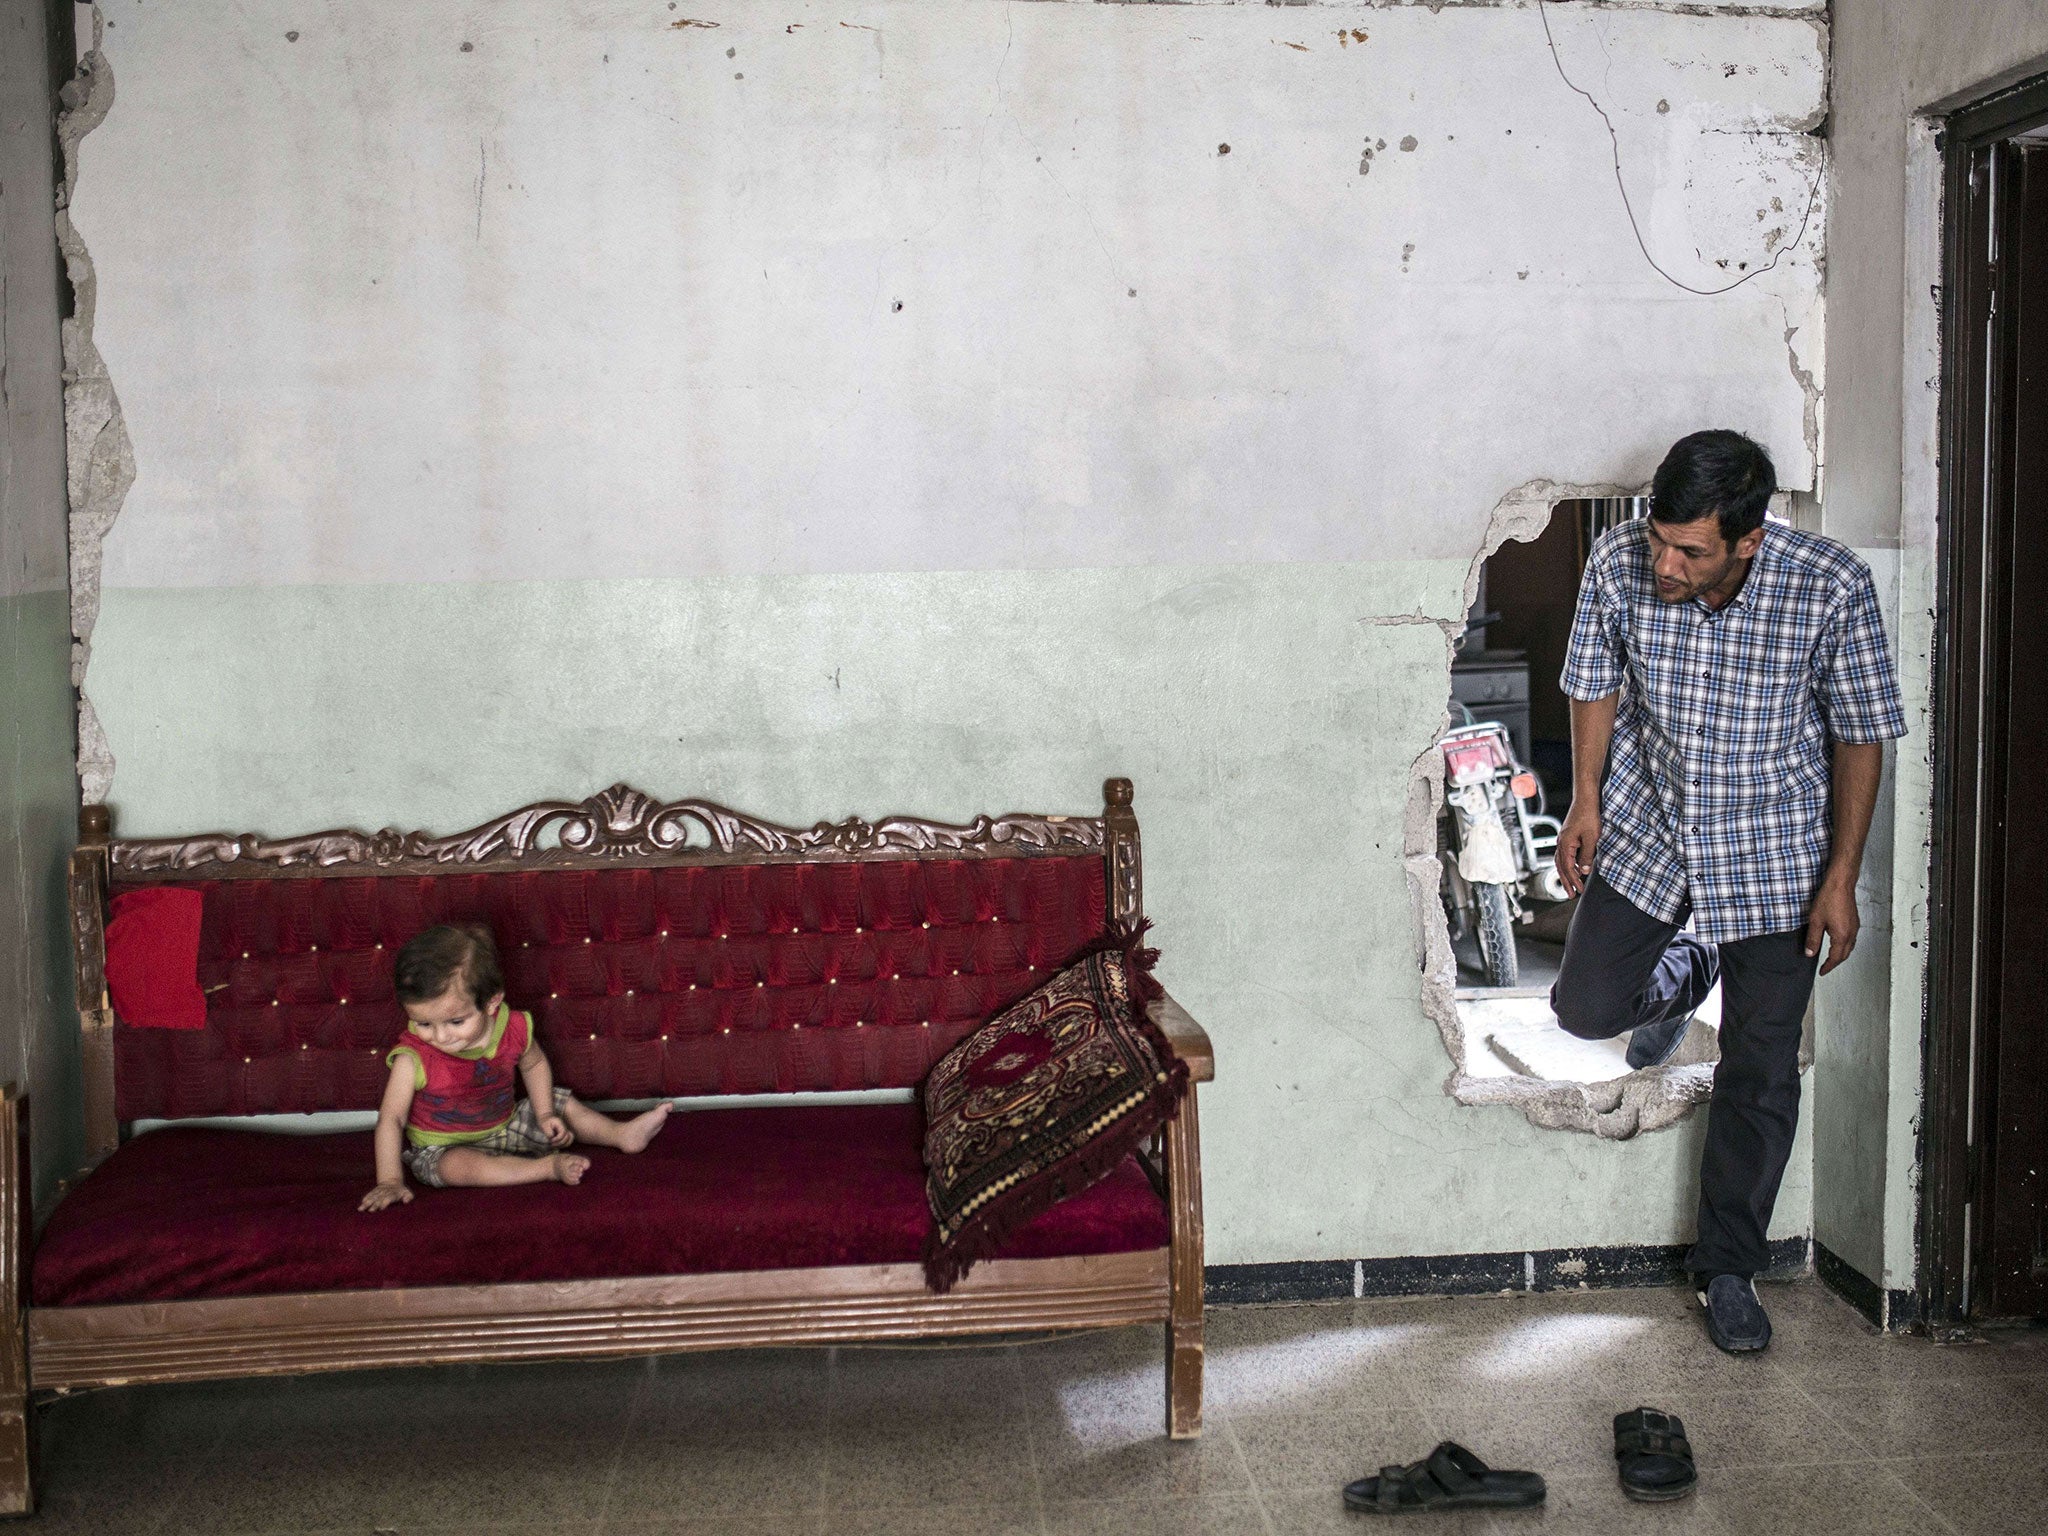 Abdullah Kurdi enters a neighbour's damaged home in Kobani, where his nephew of a similar age to Aylan Kurdi is sitting